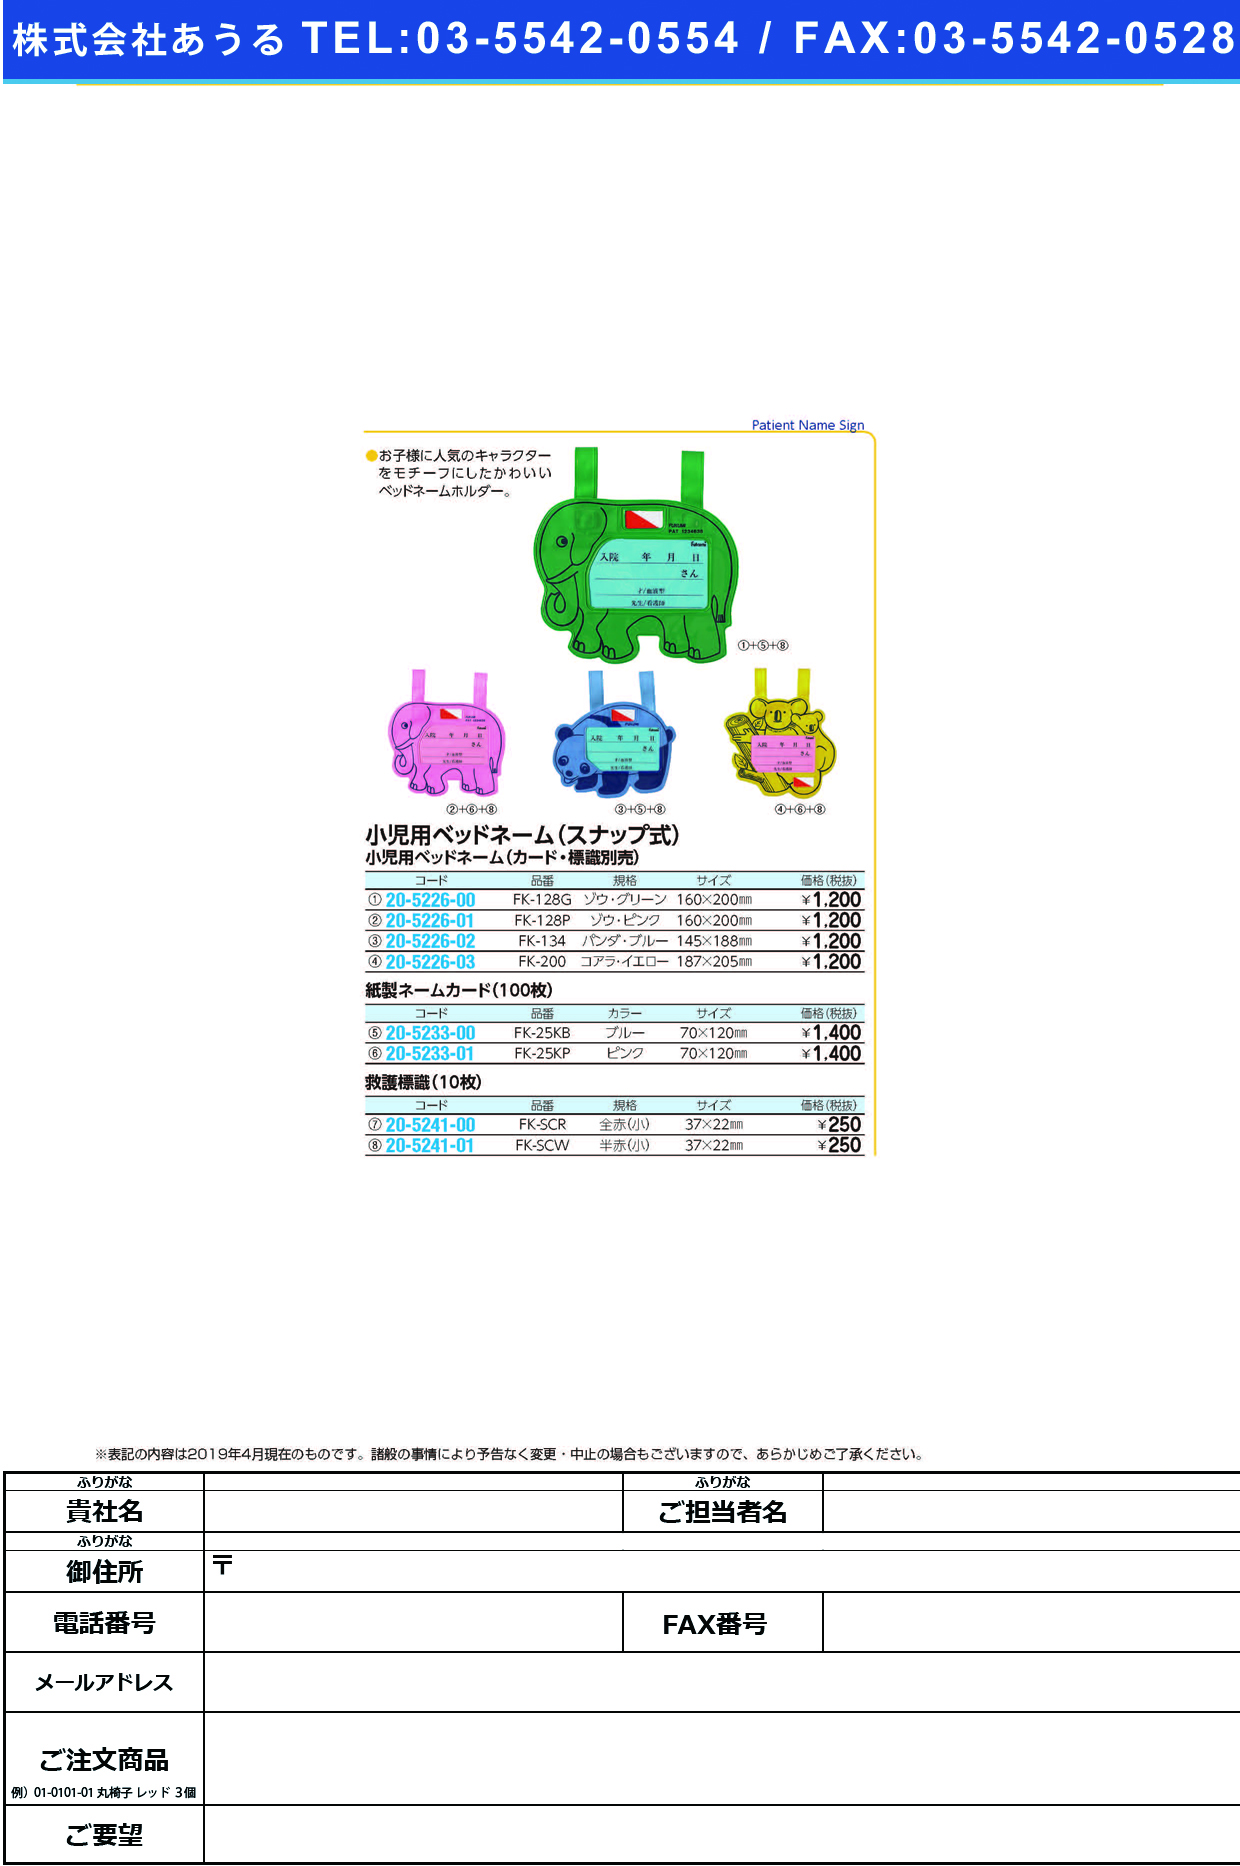 (20-5226-03)ベッドネームホルダー（小児用） FK-200(ｽﾅｯﾌﾟｼｷ) ﾍﾞｯﾄﾞﾈｰﾑﾎﾙﾀﾞｰ【1枚単位】【2019年カタログ商品】